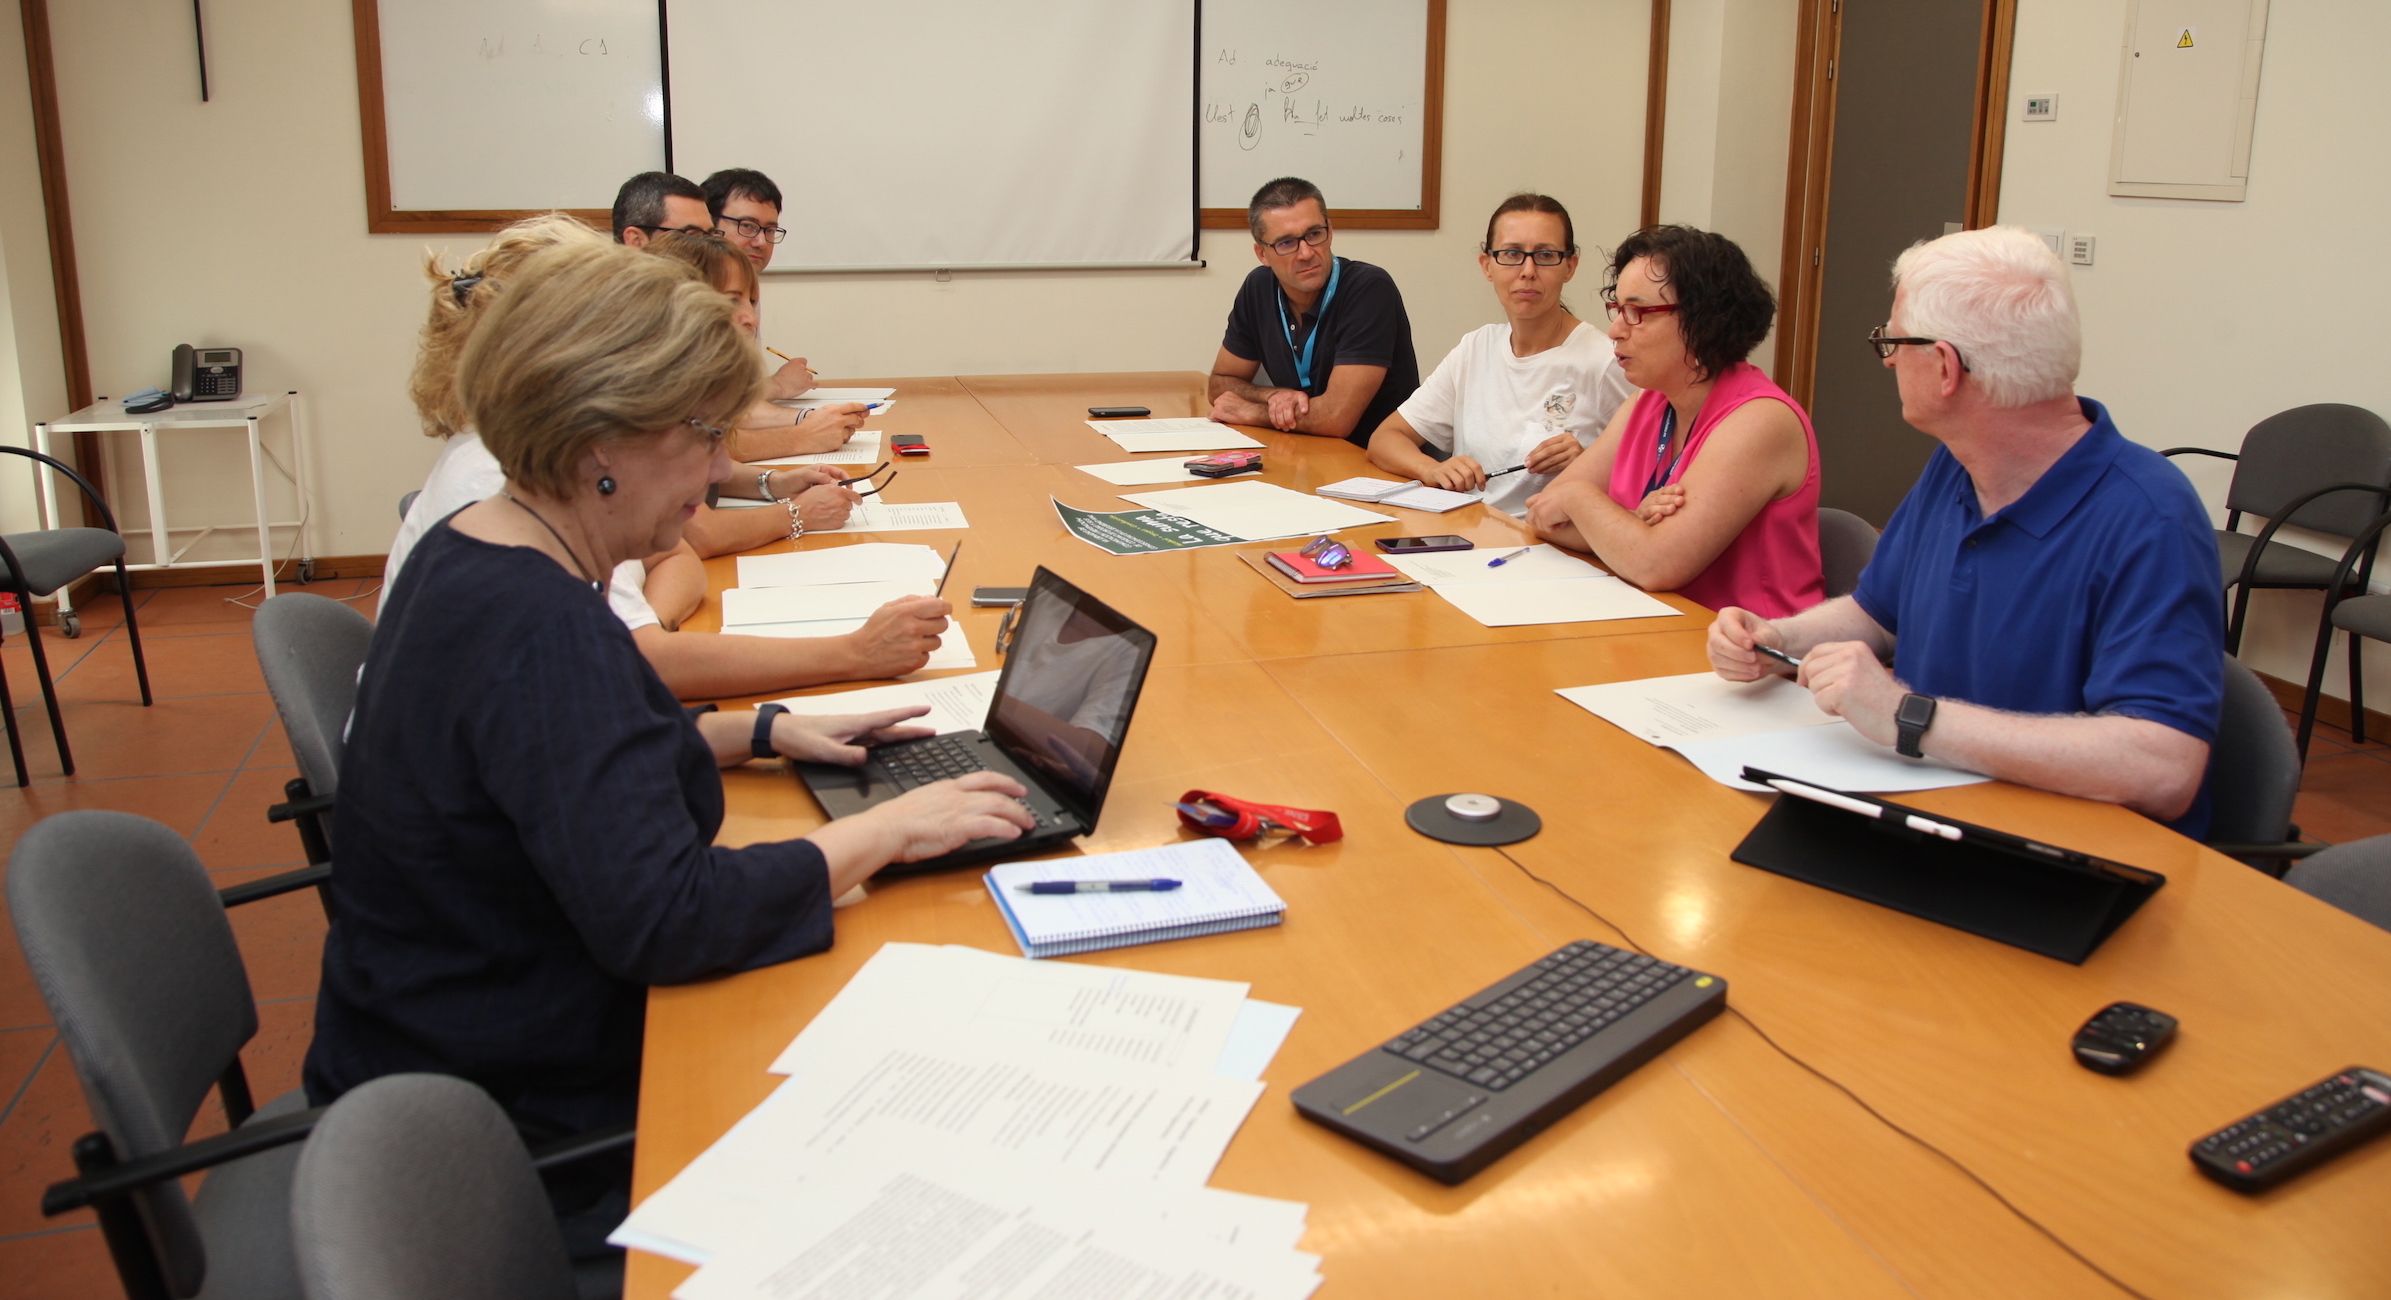 Primera reunión de trabajo del equipo del nuevo Instituto de investigación ODISEAS, de la CEU UCH.